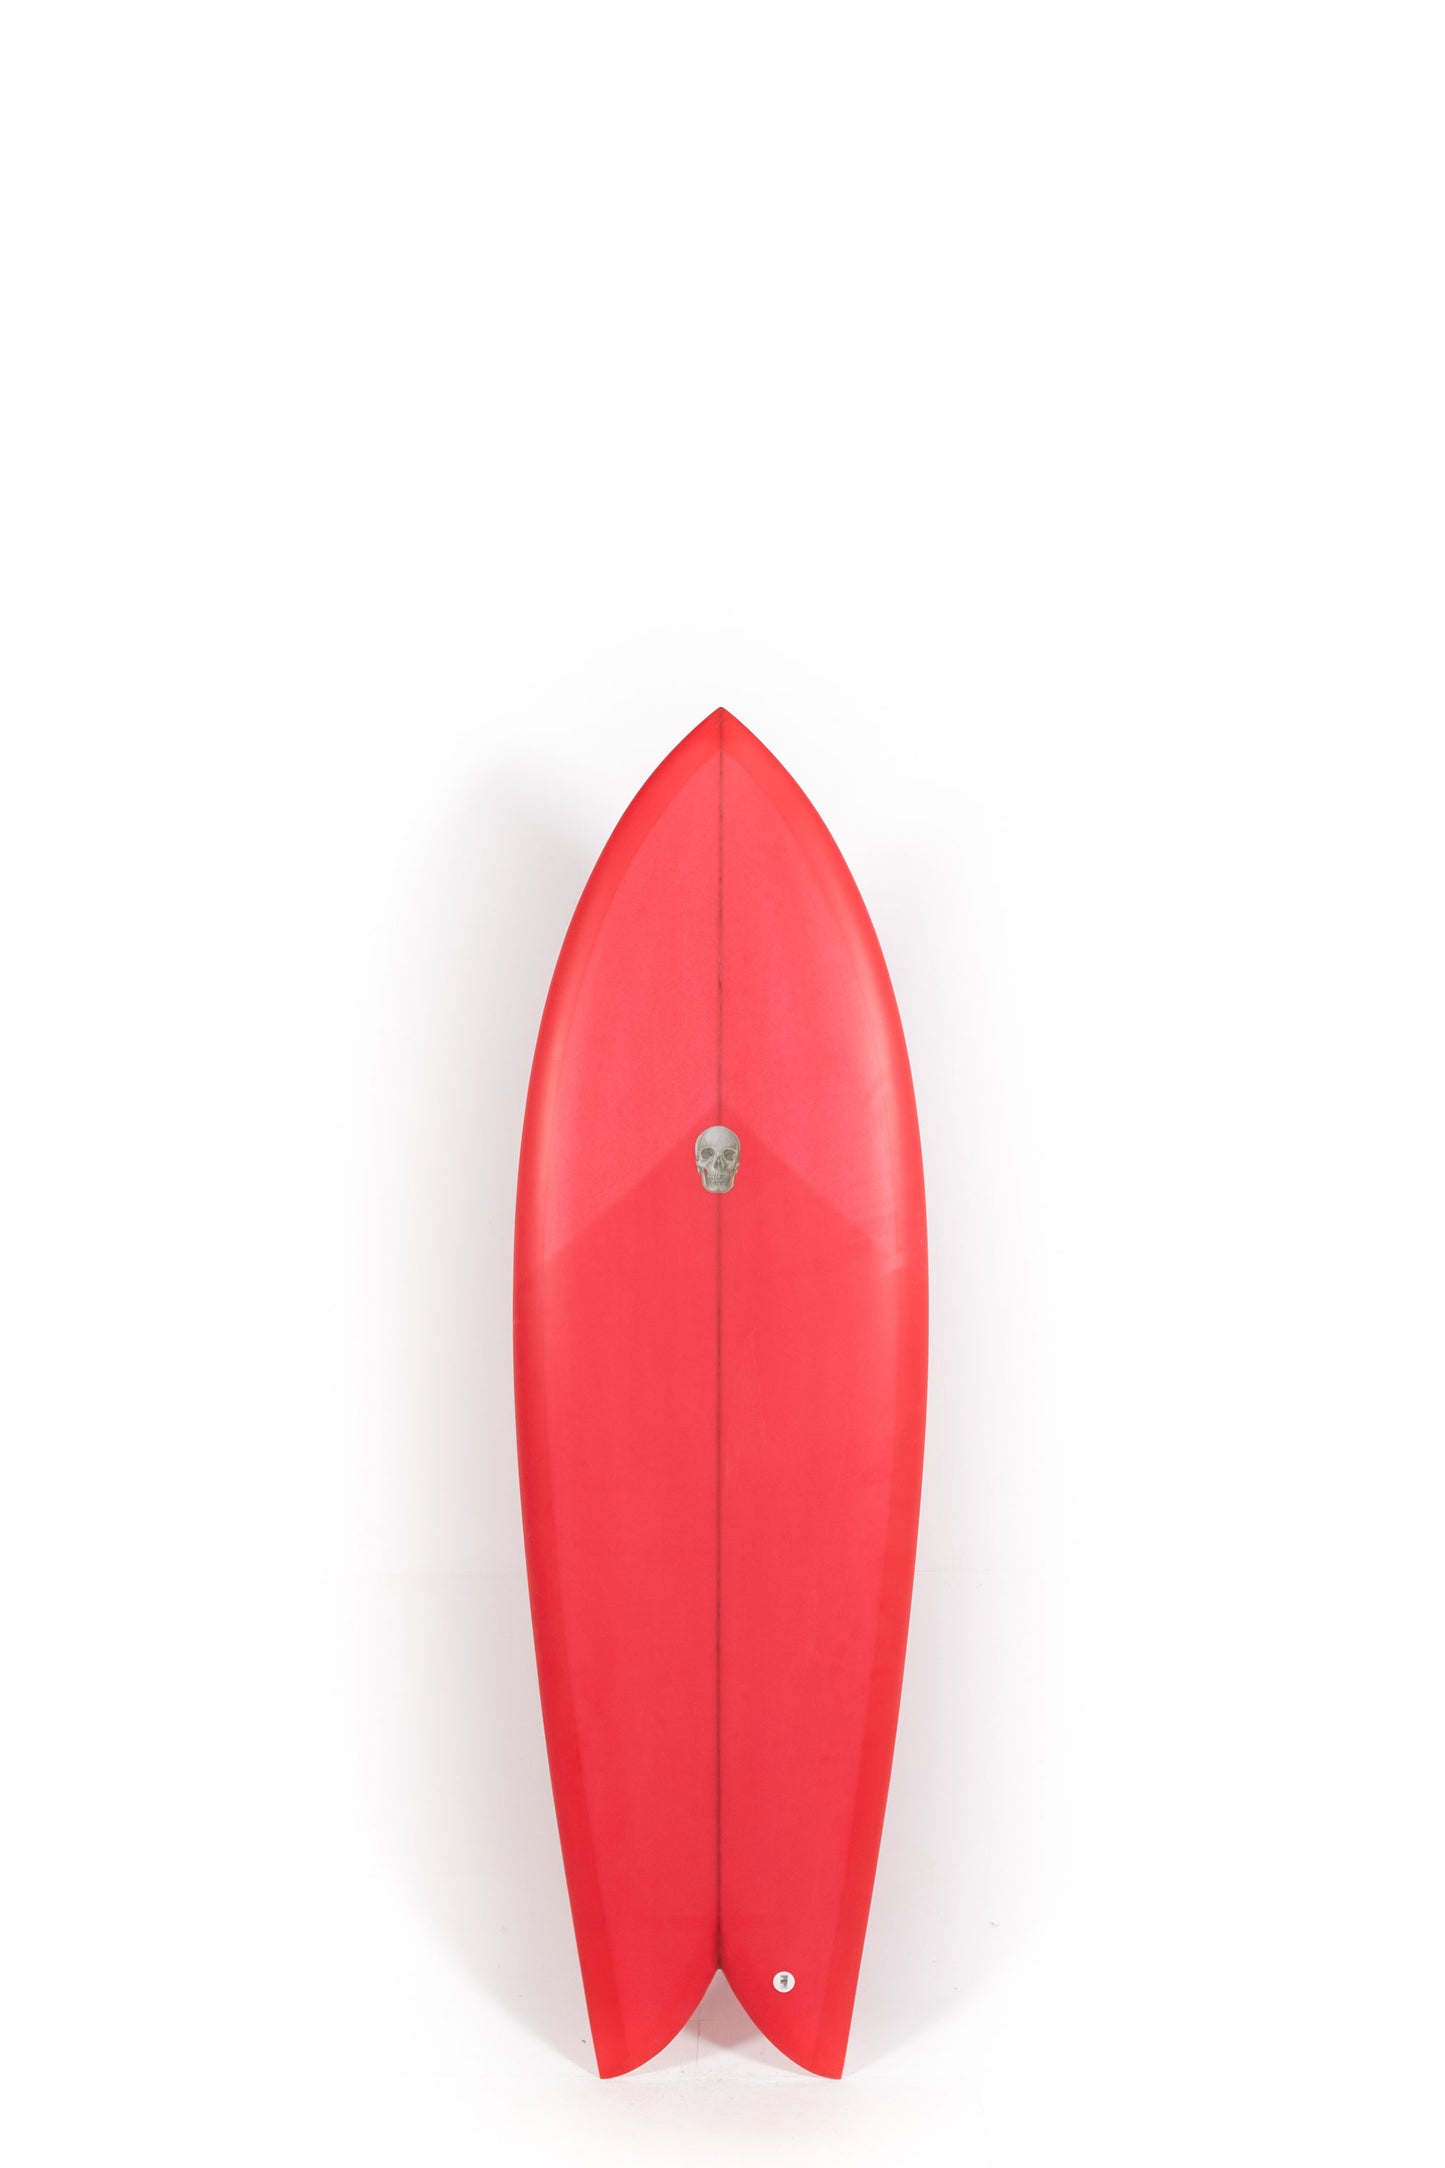 Pukas Surf Shop - Christenson Surfboards - CHRIS FISH - 5'10" x 21 1/4 x 2 5/8 - CX05010